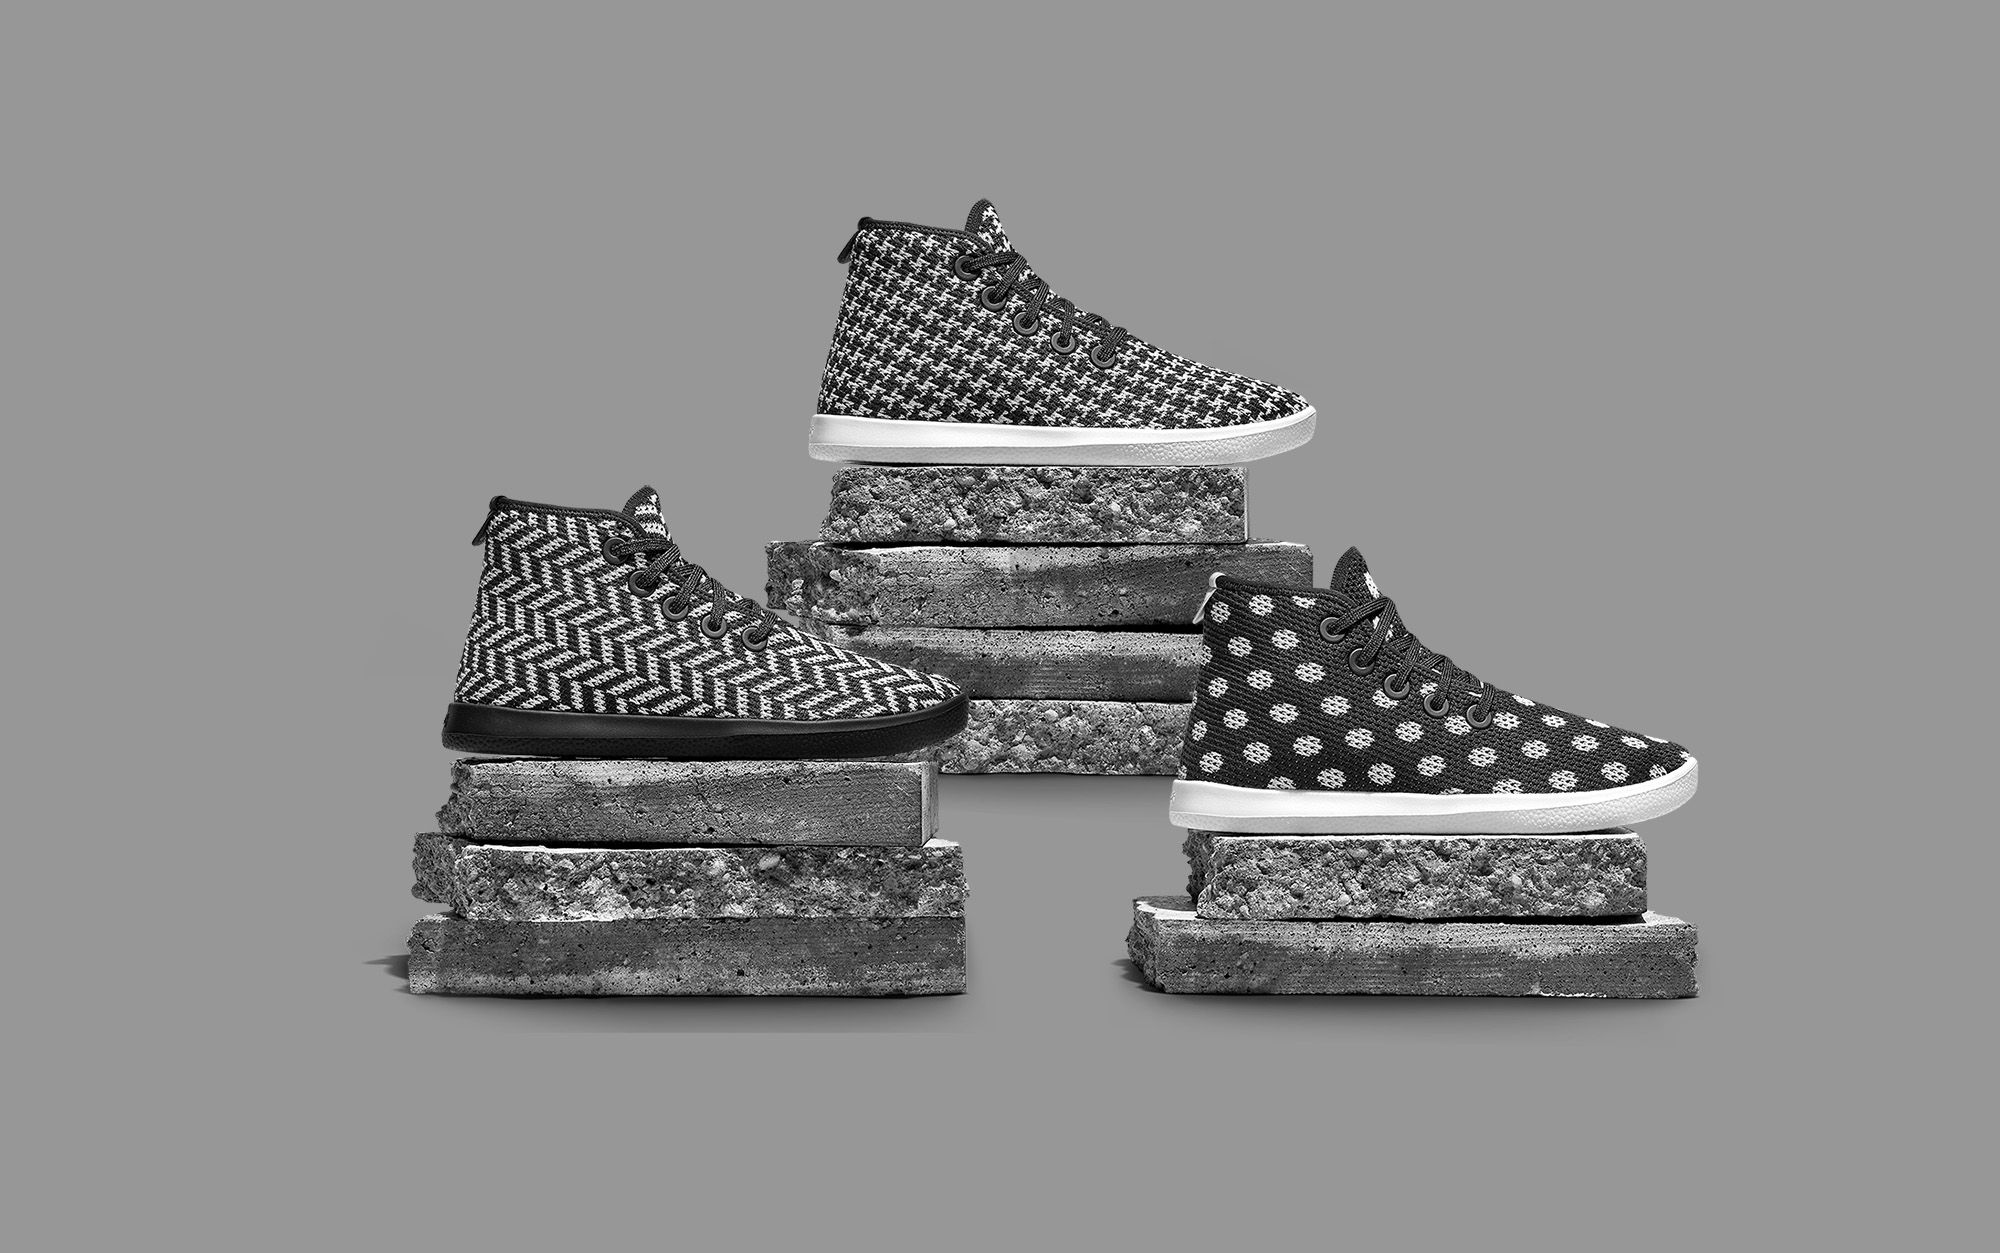 Marka Ultimate Comfy Sneaker właśnie ulepszyła swoją kolekcję butów o super szykowne wzory po raz pierwszy